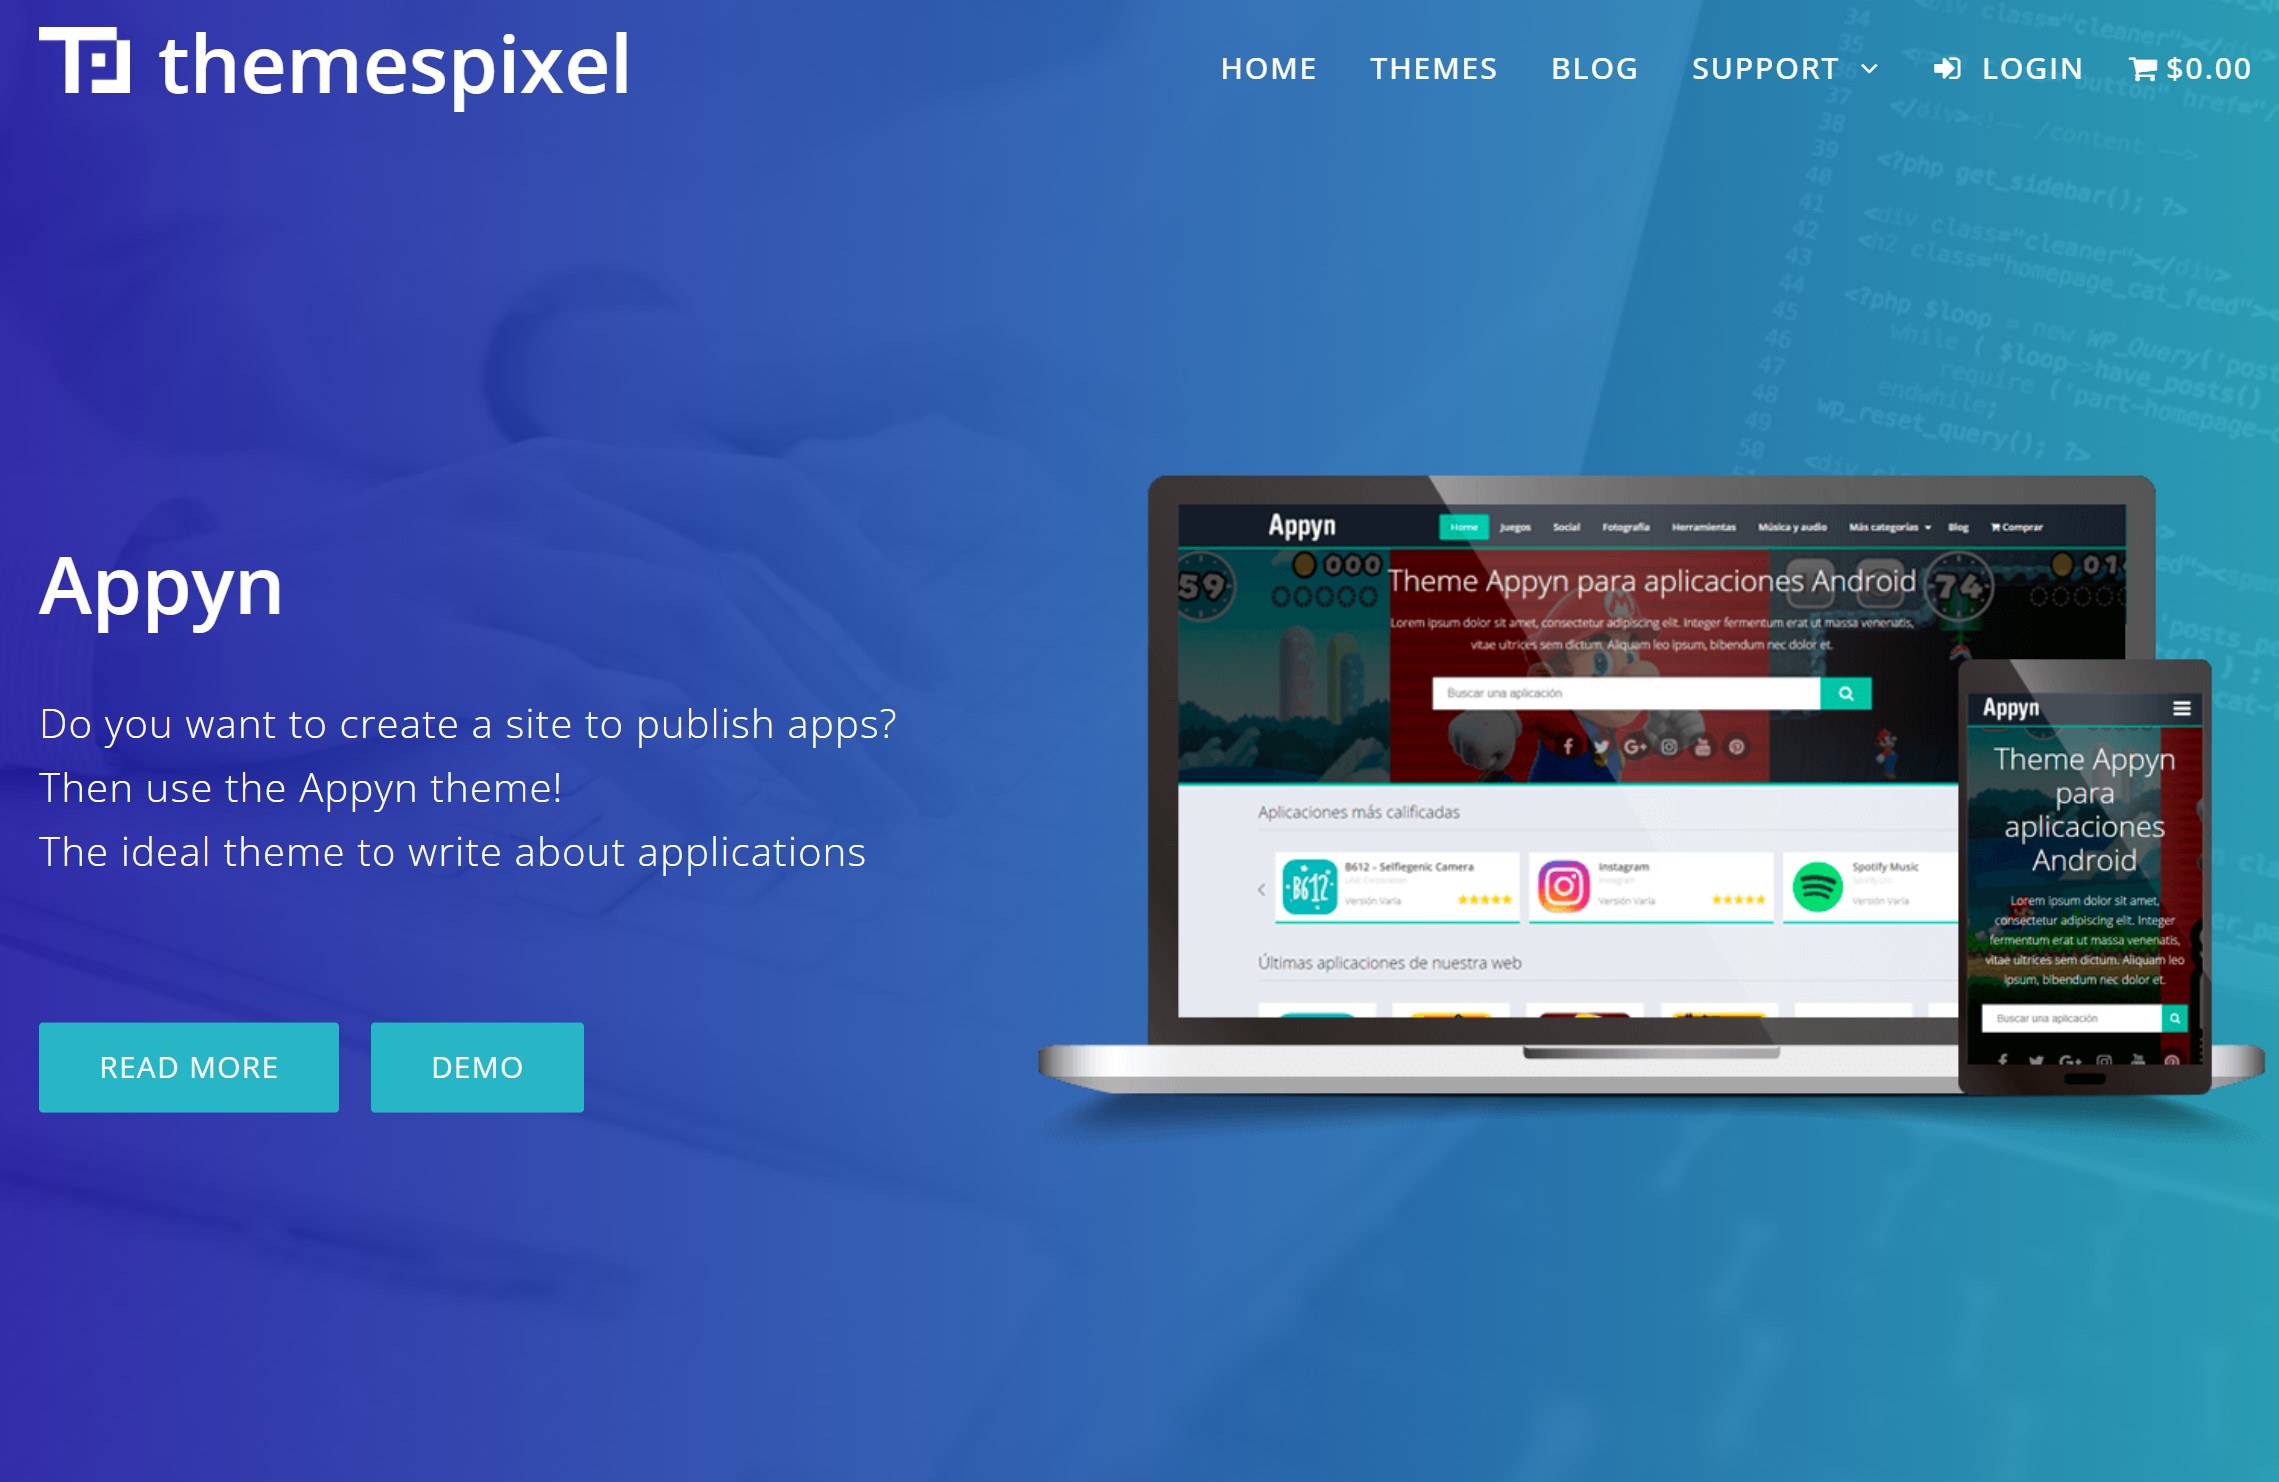 Appyn – Themespixel WordPress Theme 2.0.12